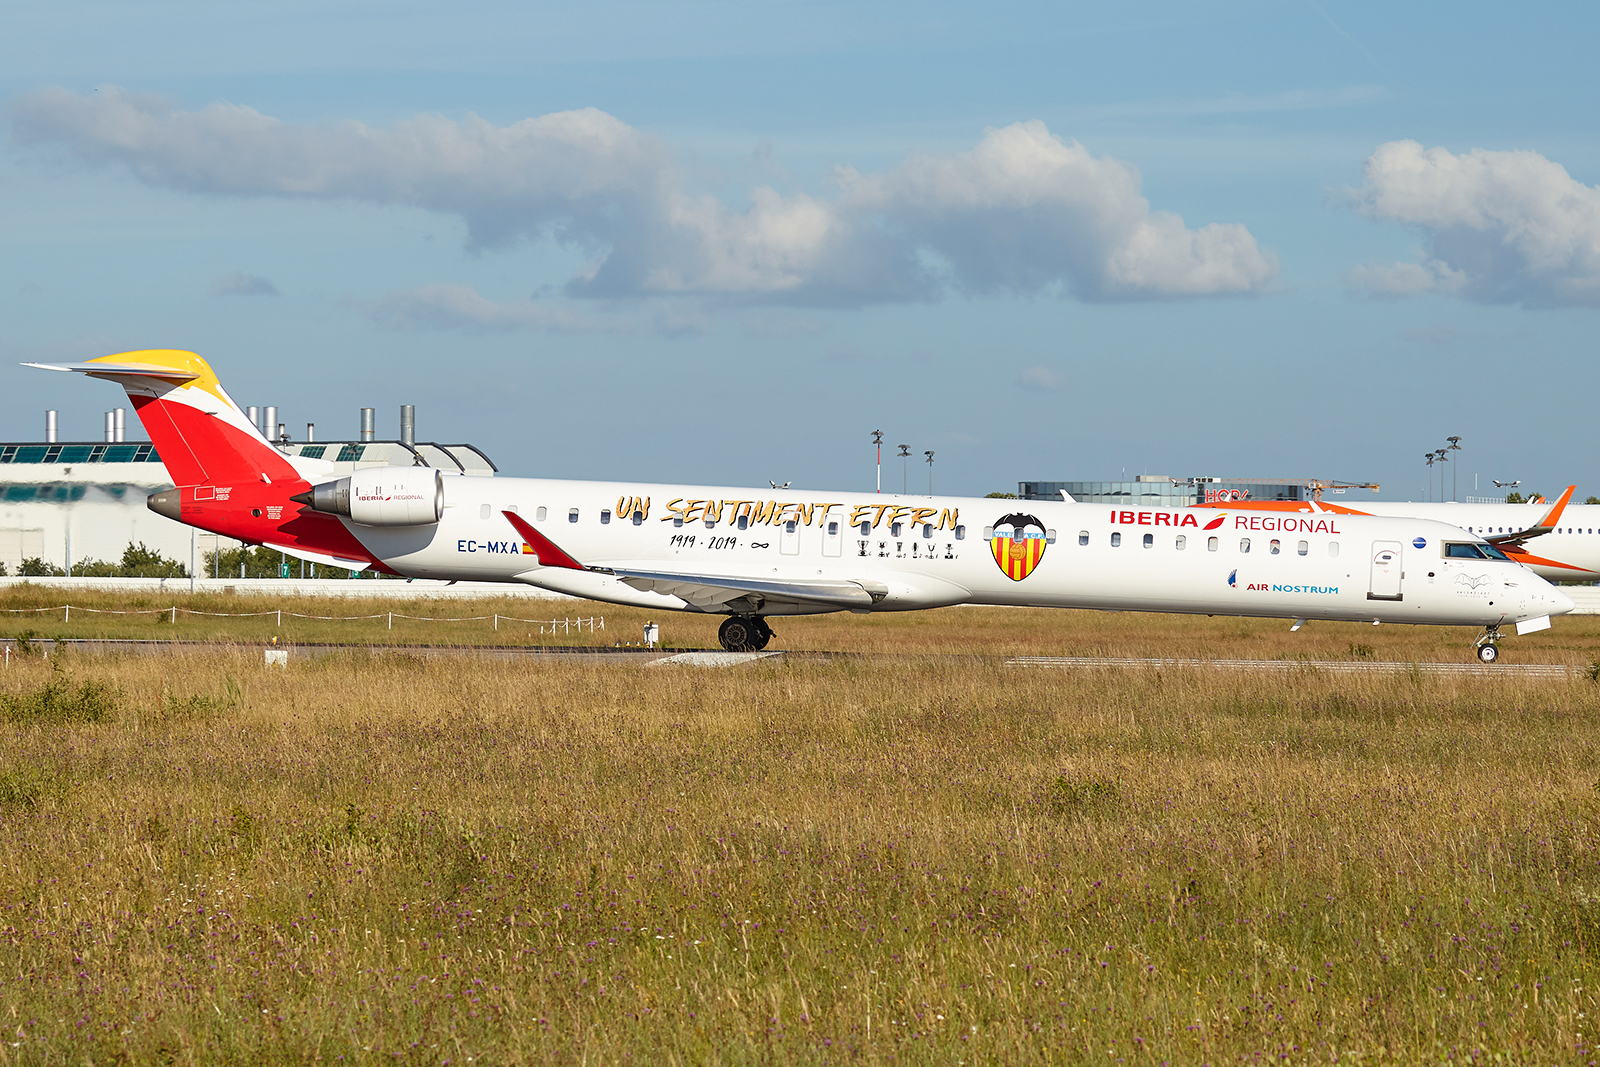 [02/03/2019] CRJ1000 (EC-MXA) Air Nostrum "Valencia CF" livery 1906171024345493216277479